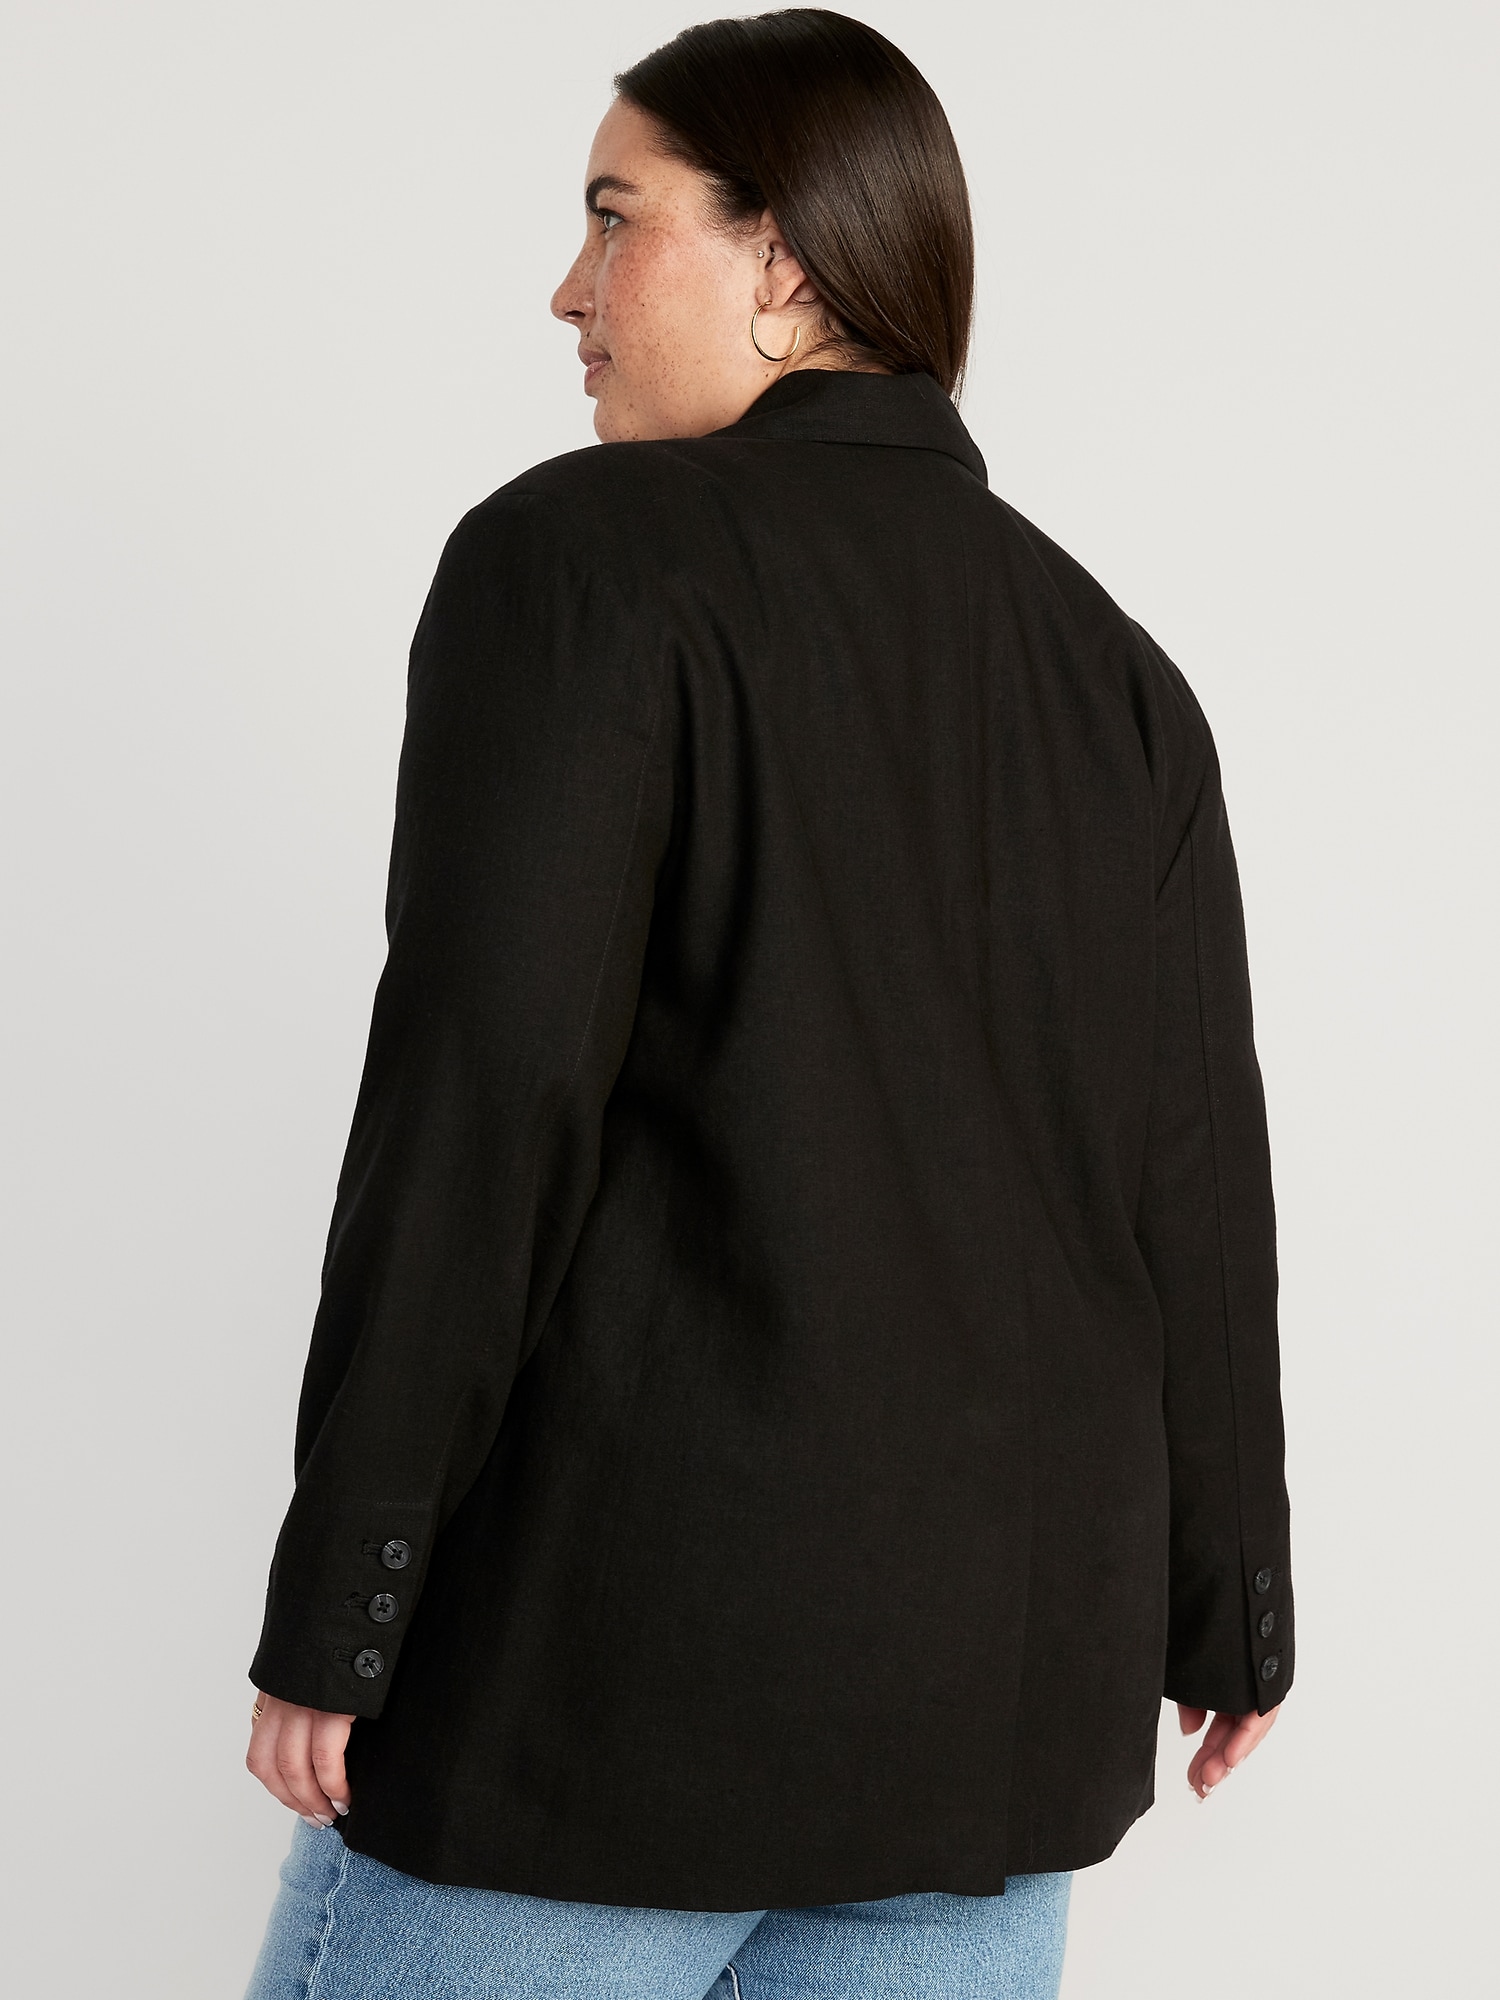 beloning zijde Terzijde Double-Breasted Linen-Blend Suit Blazer for Women | Old Navy